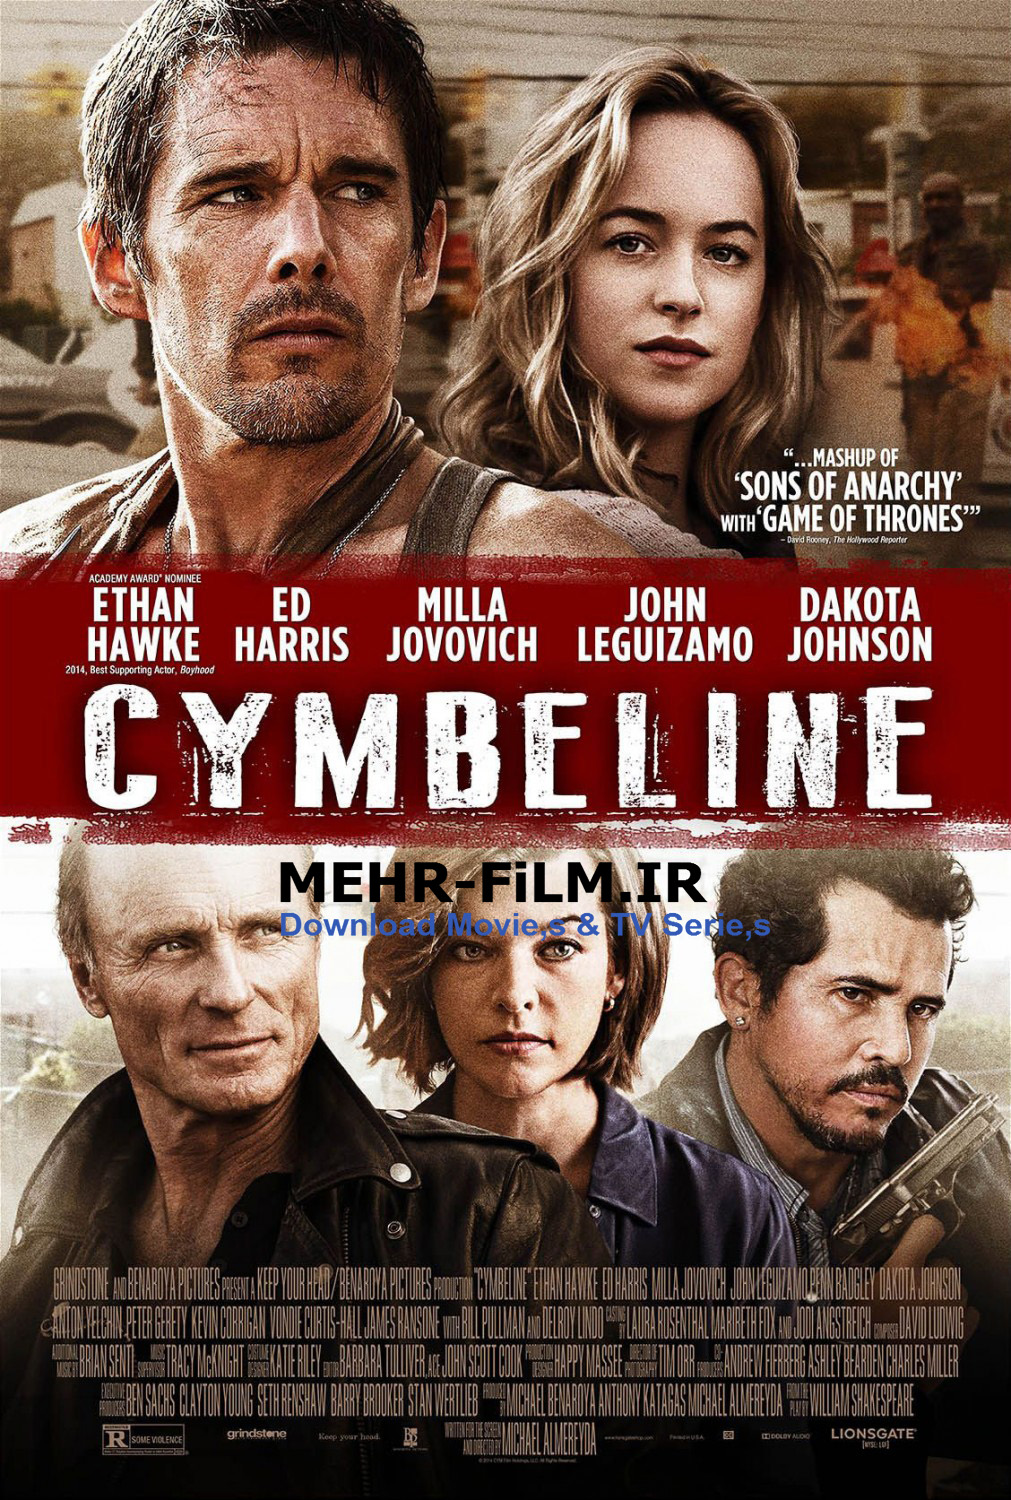 دانلود فیلم Cymbeline 2014